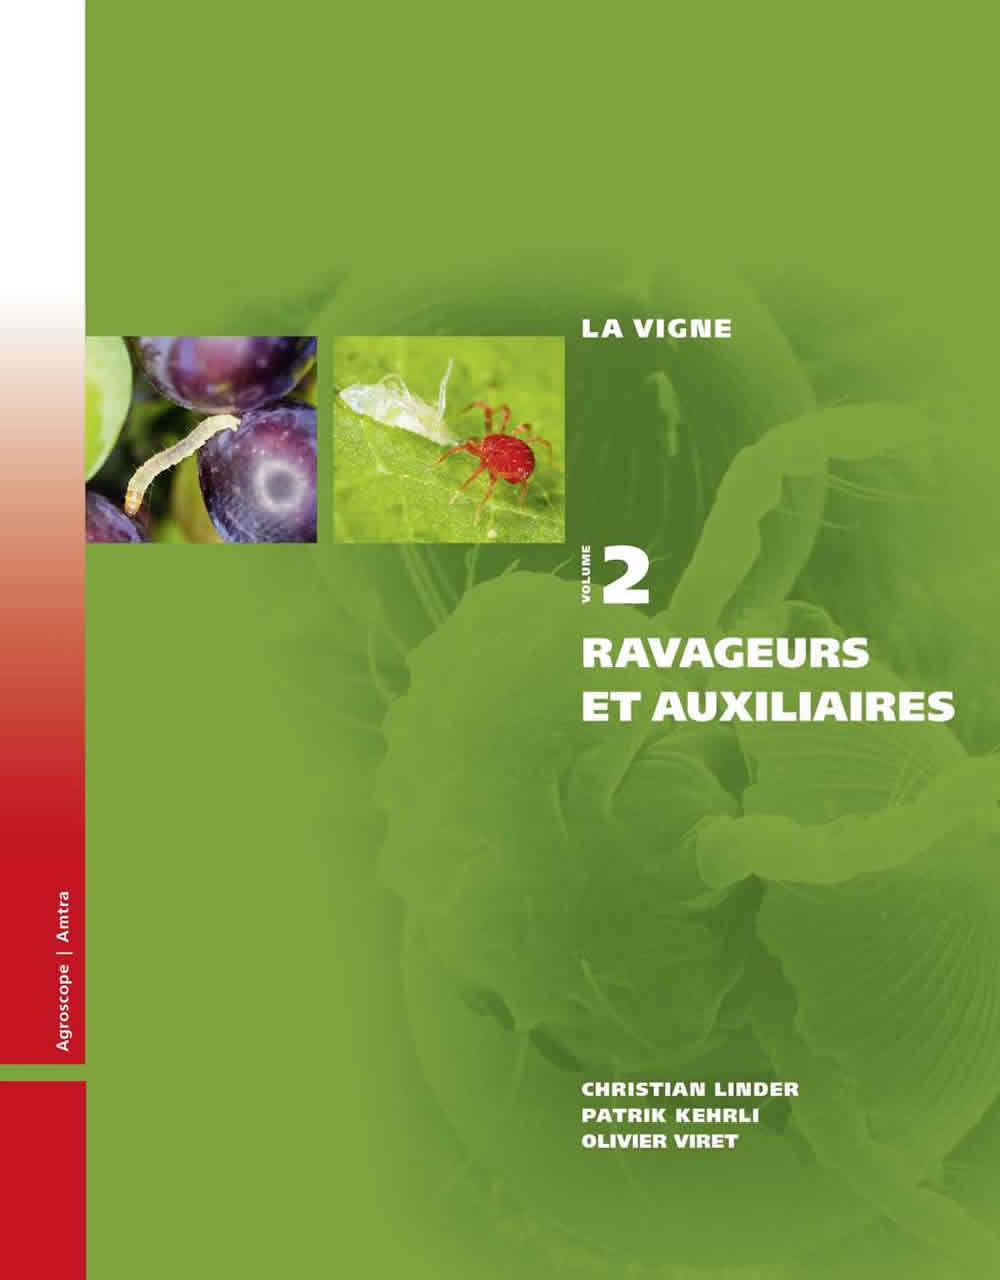 La vigne: Volume 2, Ravageurs et auxiliaires